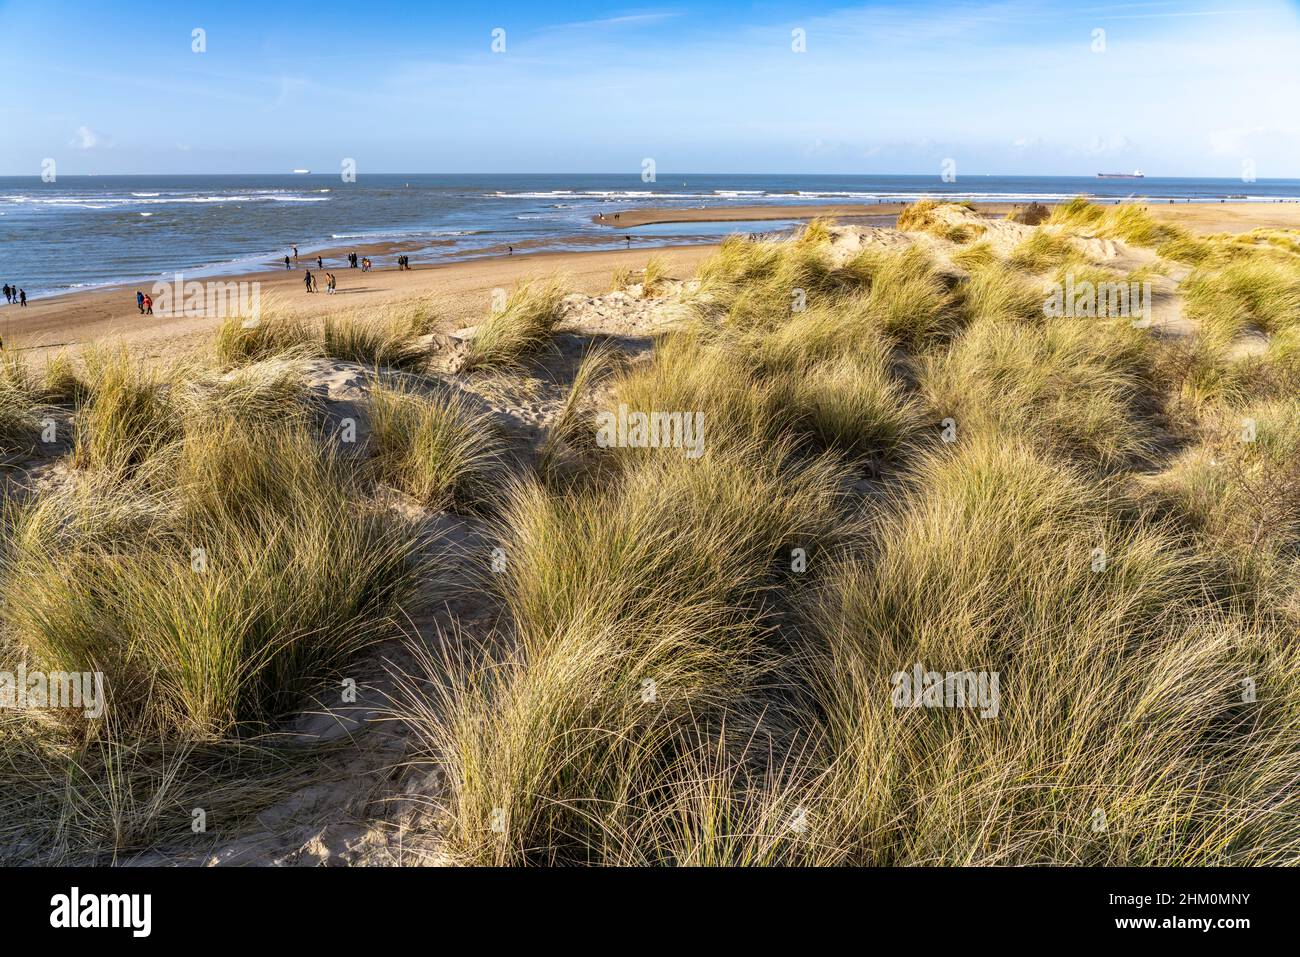 Strand des  Naturschutzgebiet Het Zwin an der Nordsee zwischen Belgien und den  Niederlanden  |   Beach of  the nature reserve Zwin at the North Sea c Stock Photo